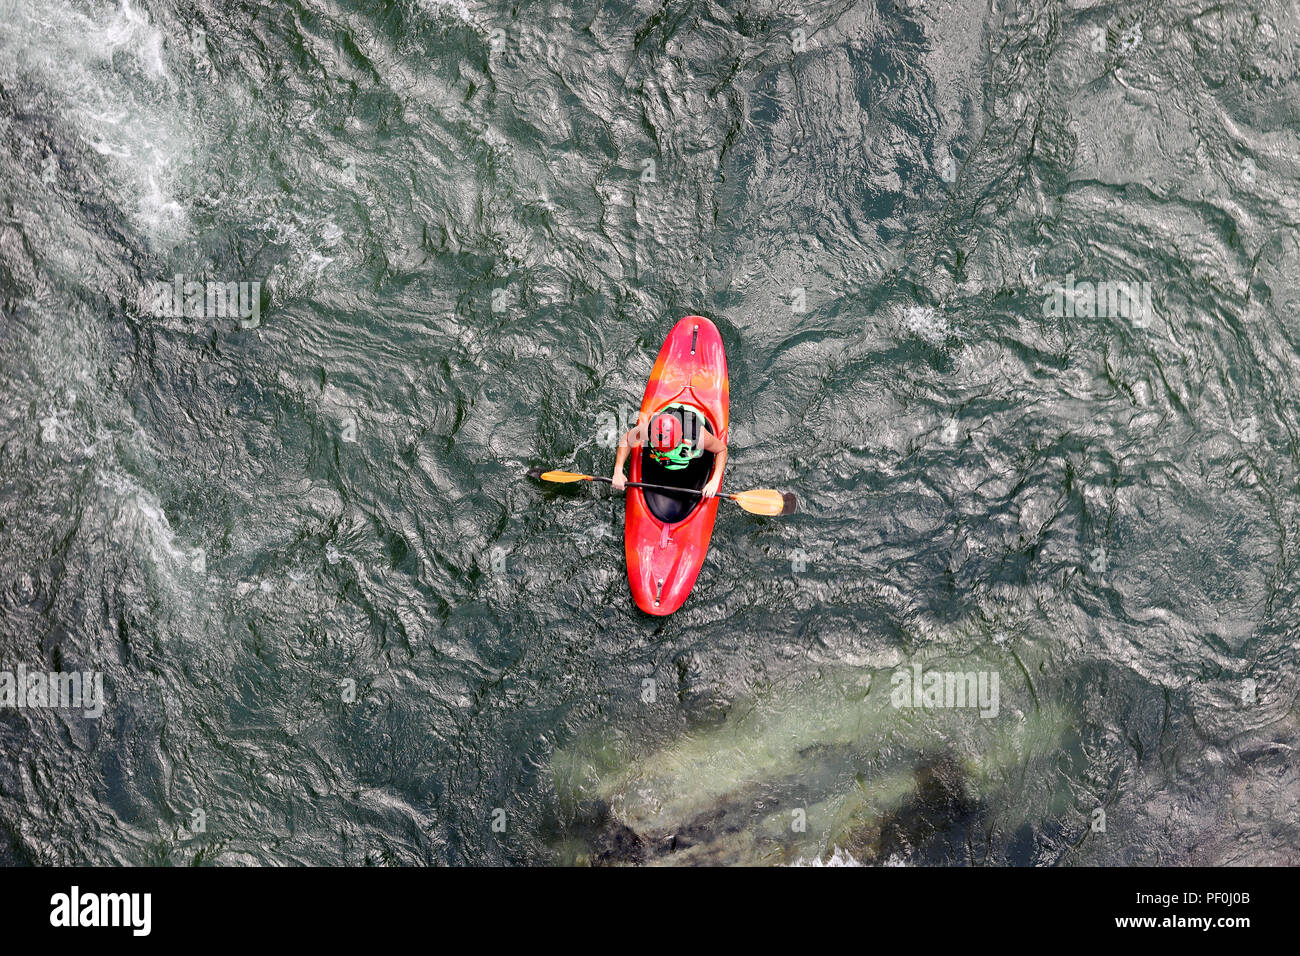 Acqua kayak sulle rapide del fiume Yosino in Giappone Foto Stock